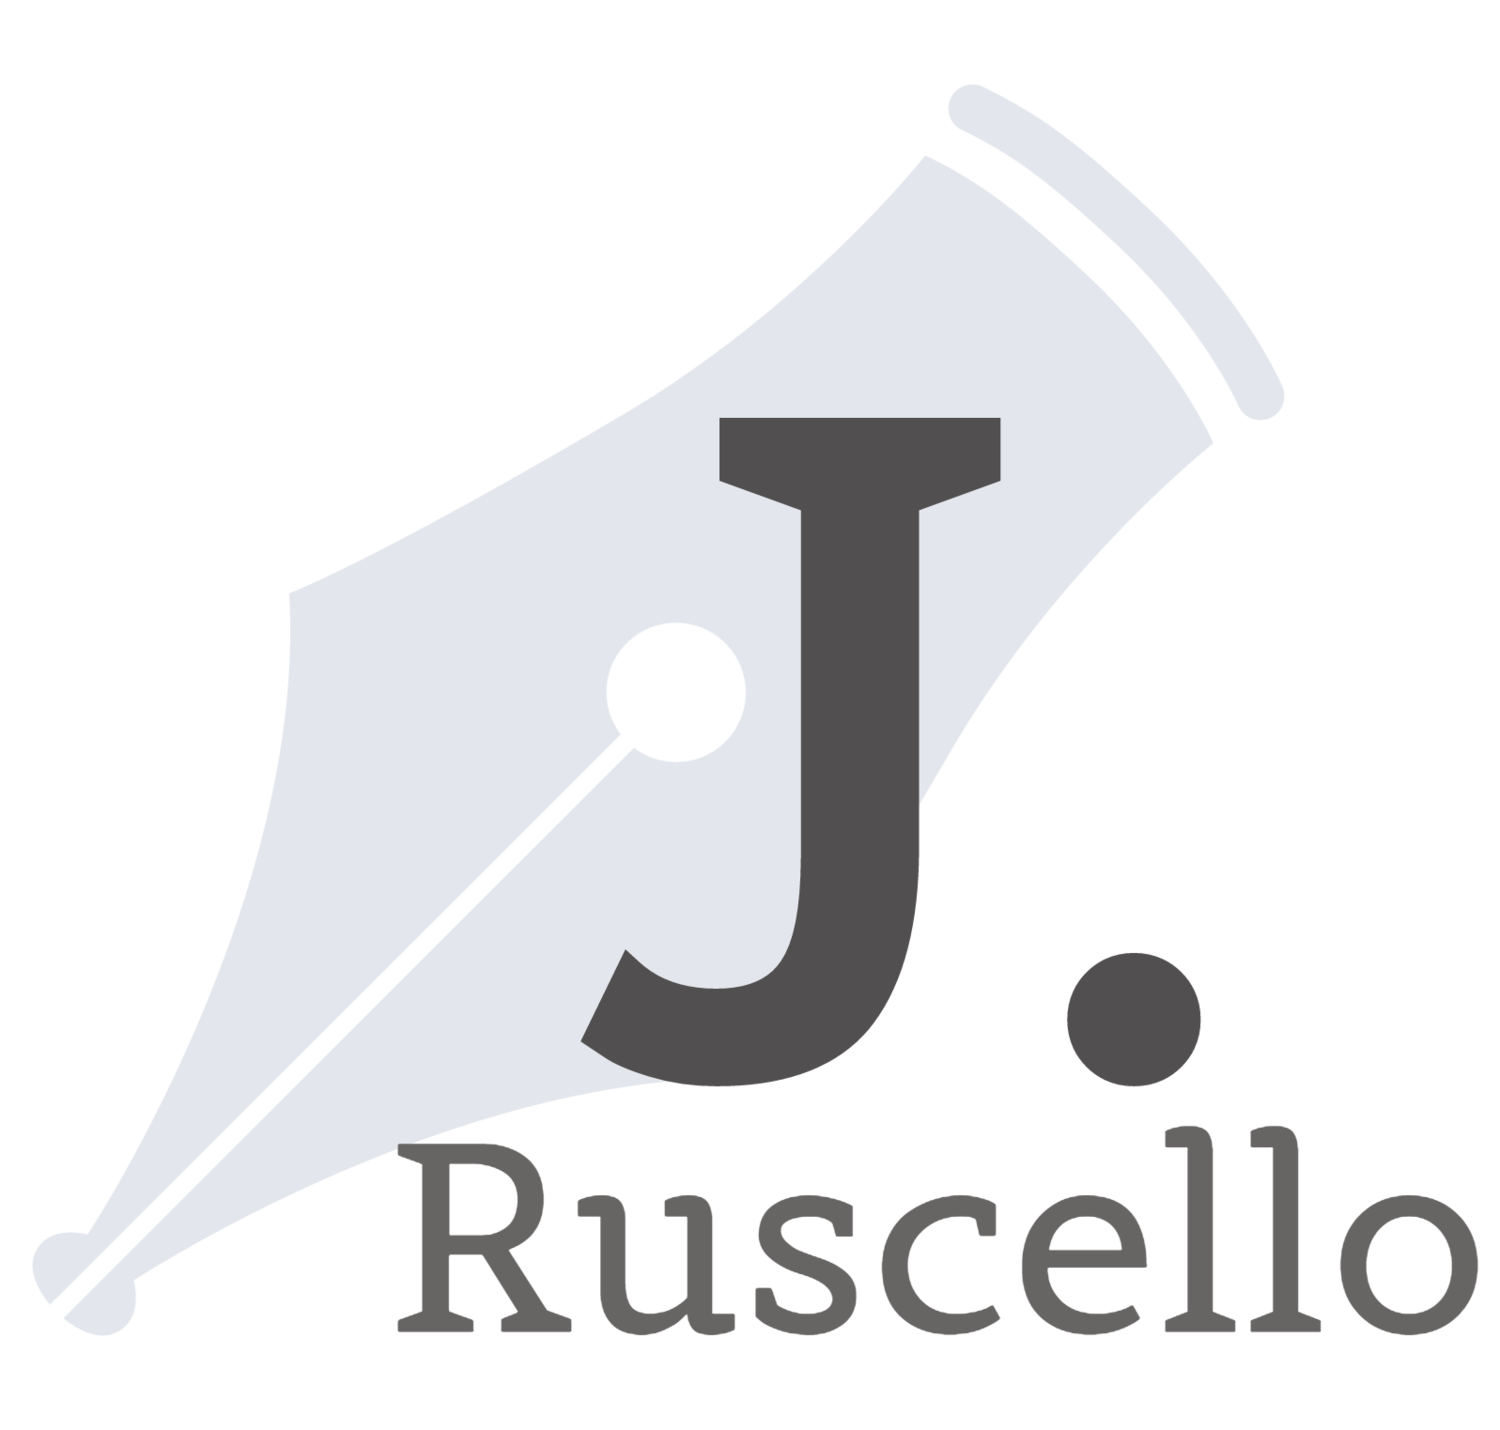 J.Ruscello